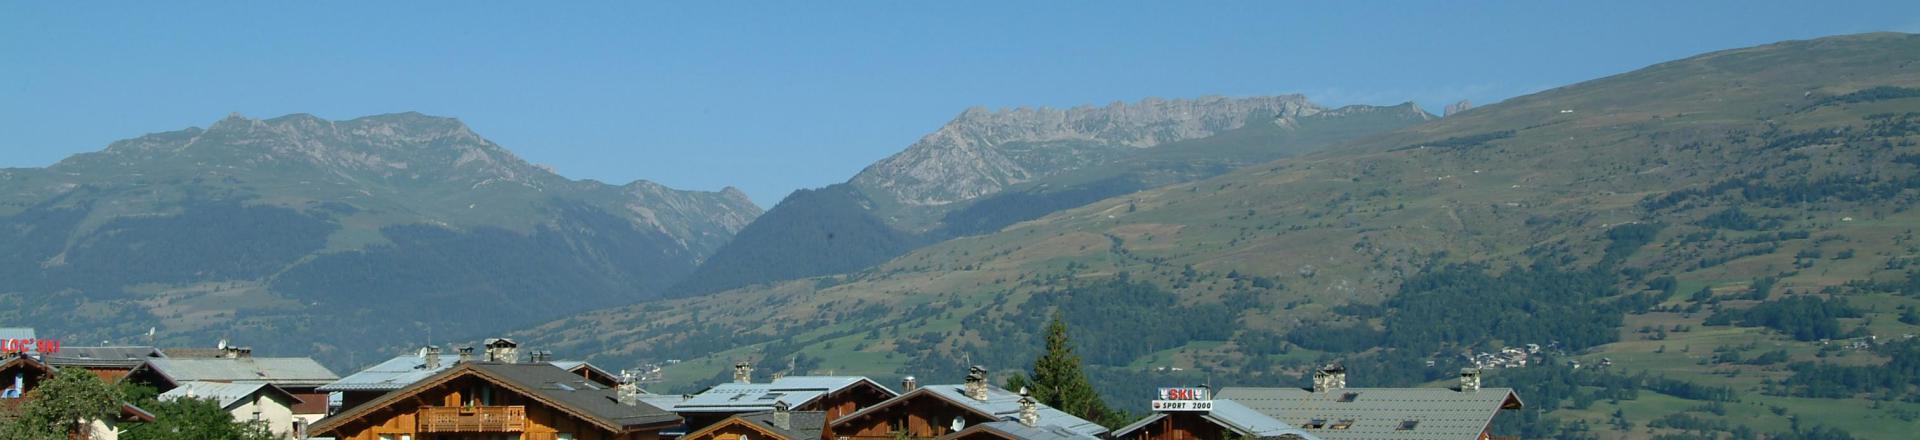 Каникулы в горах Résidence les Chalets de Wengen - Montchavin La Plagne - летом под открытым небом